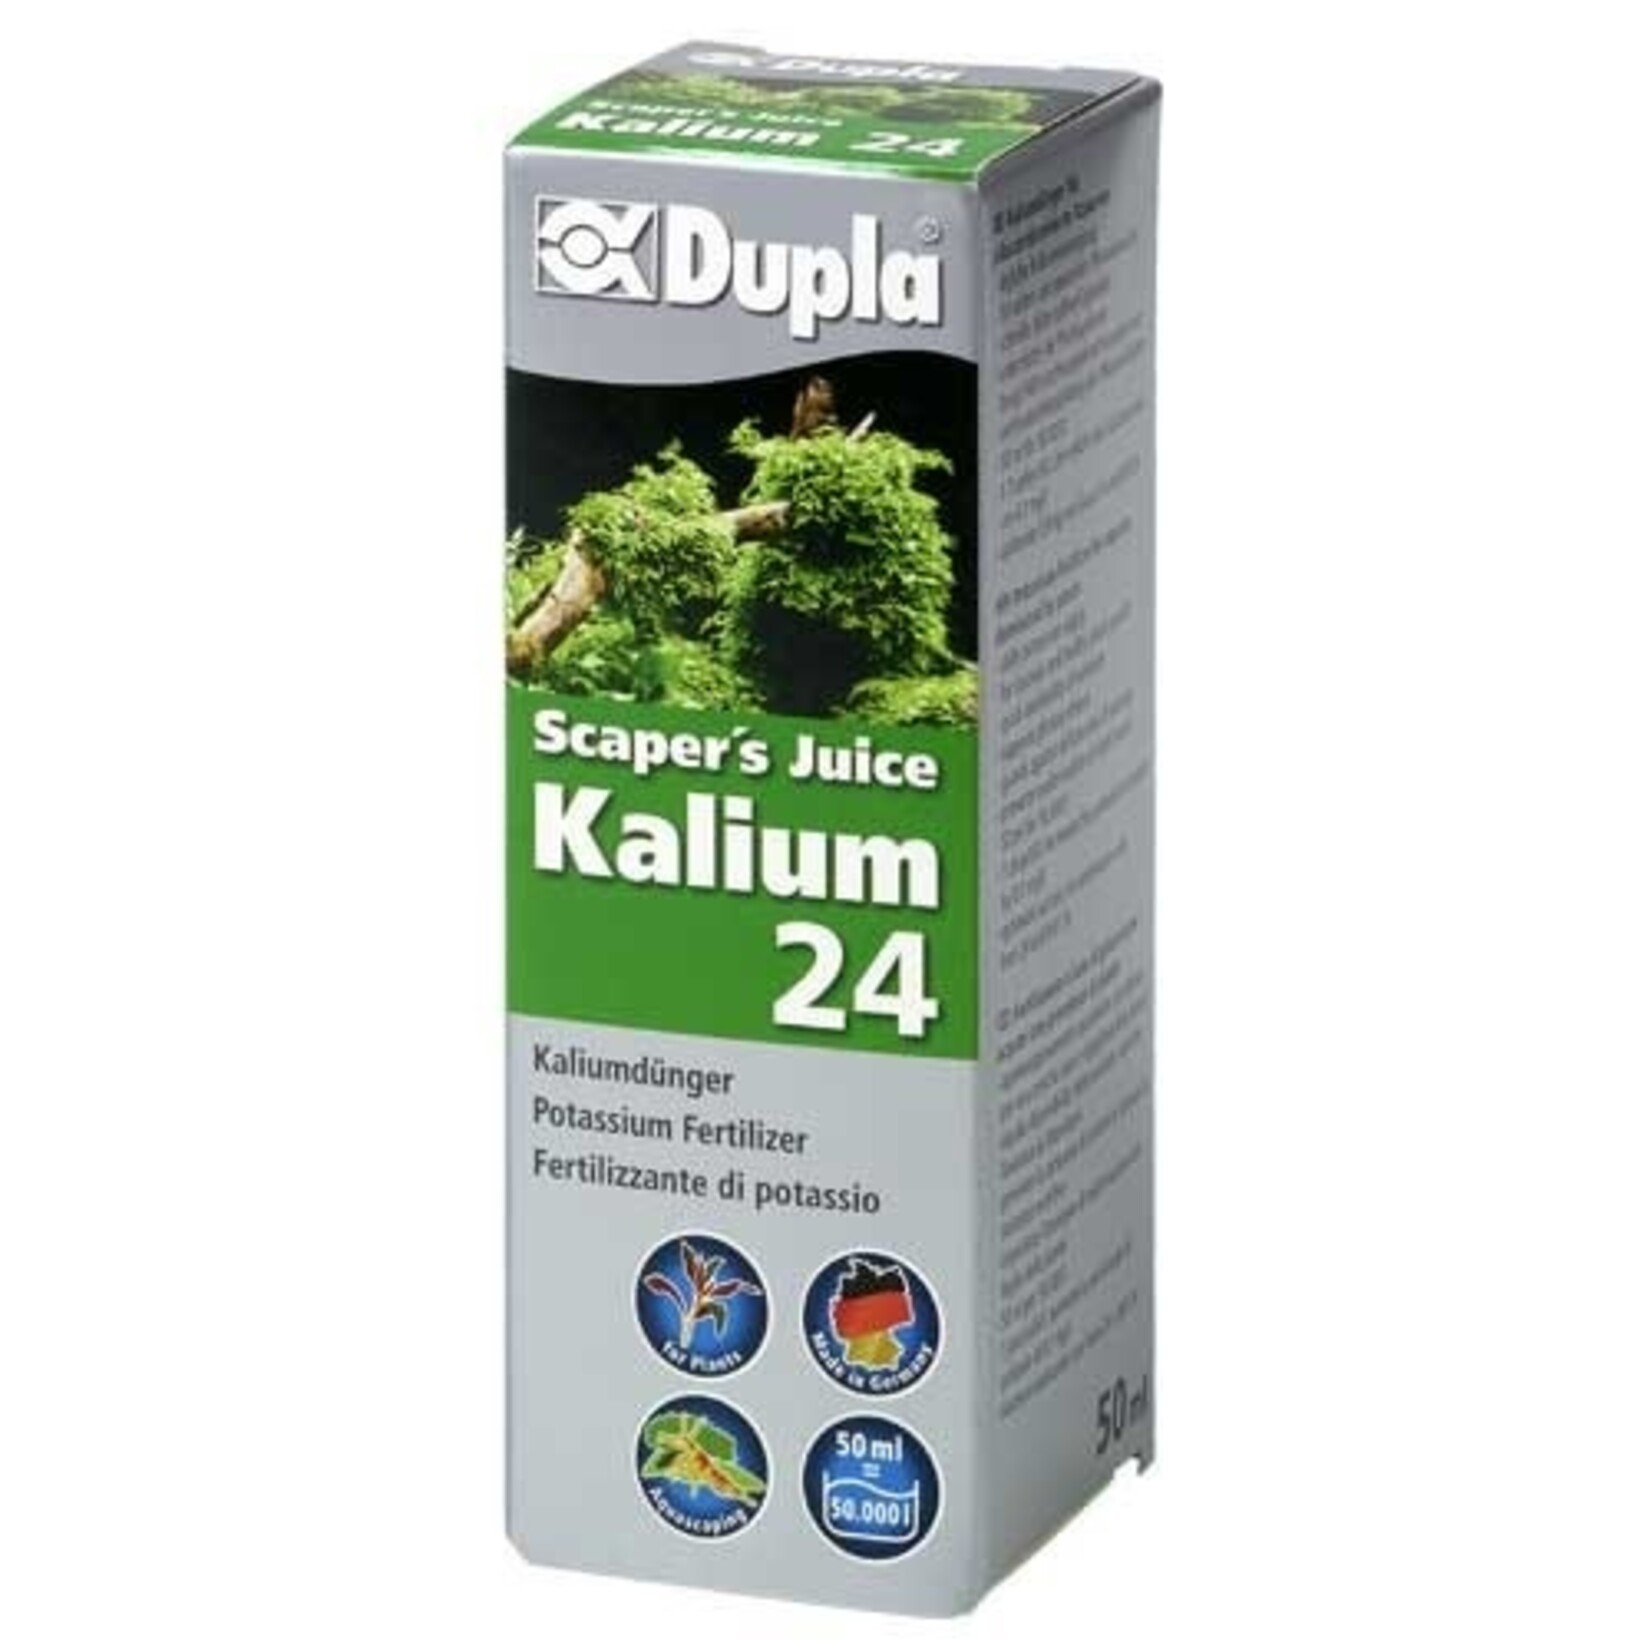 Dupla Scaper's juice kalium 24 50 ml